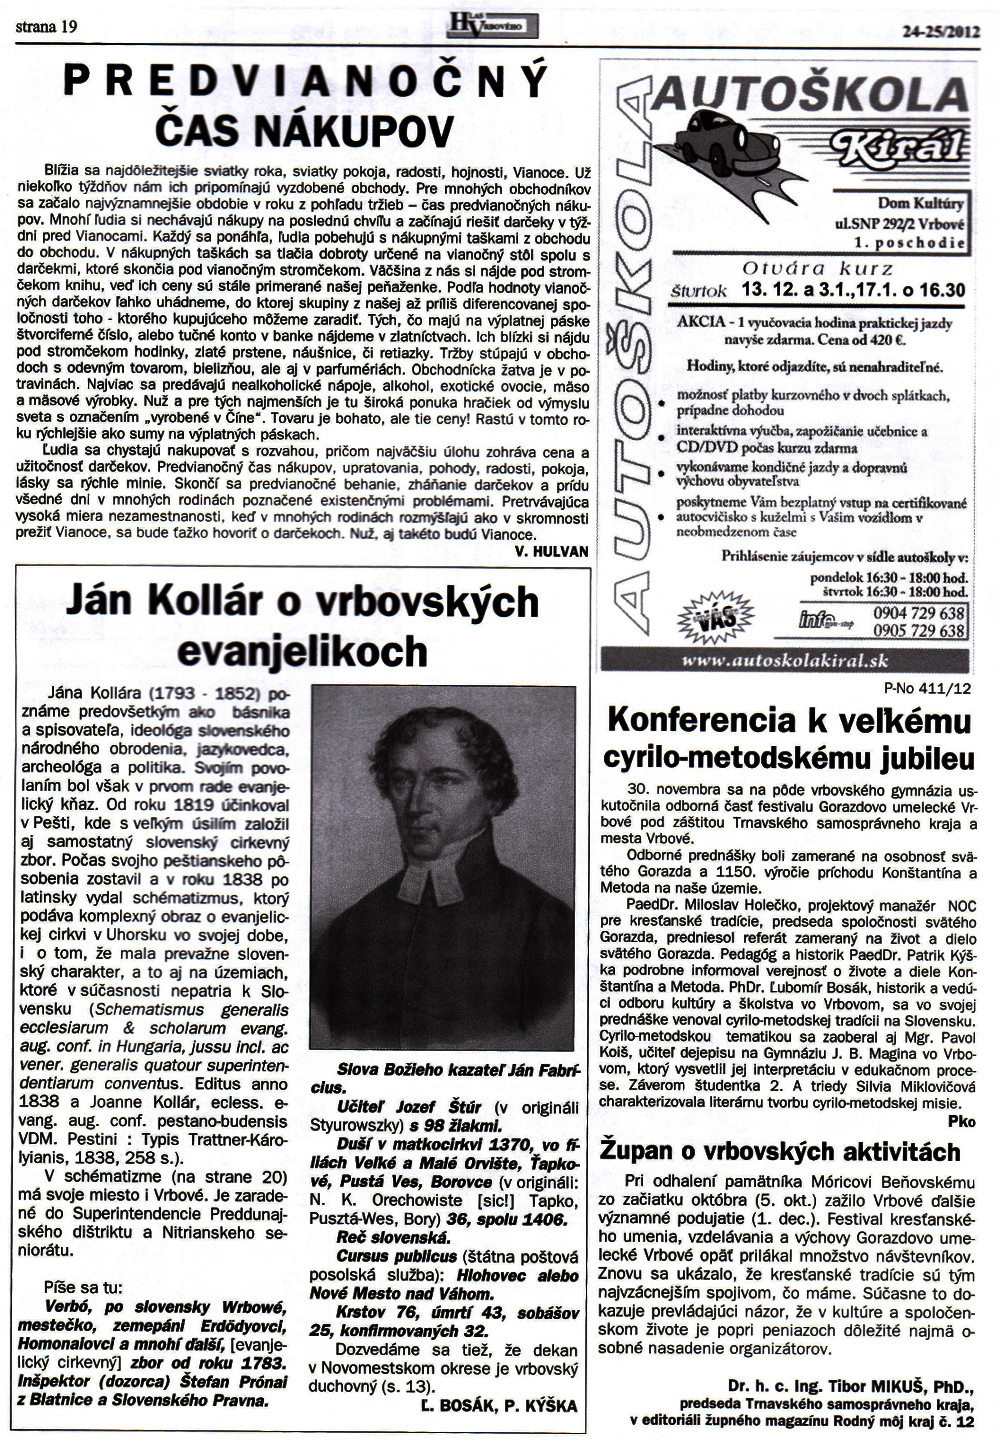 Hlas Vrbového 24/2012, strana 19